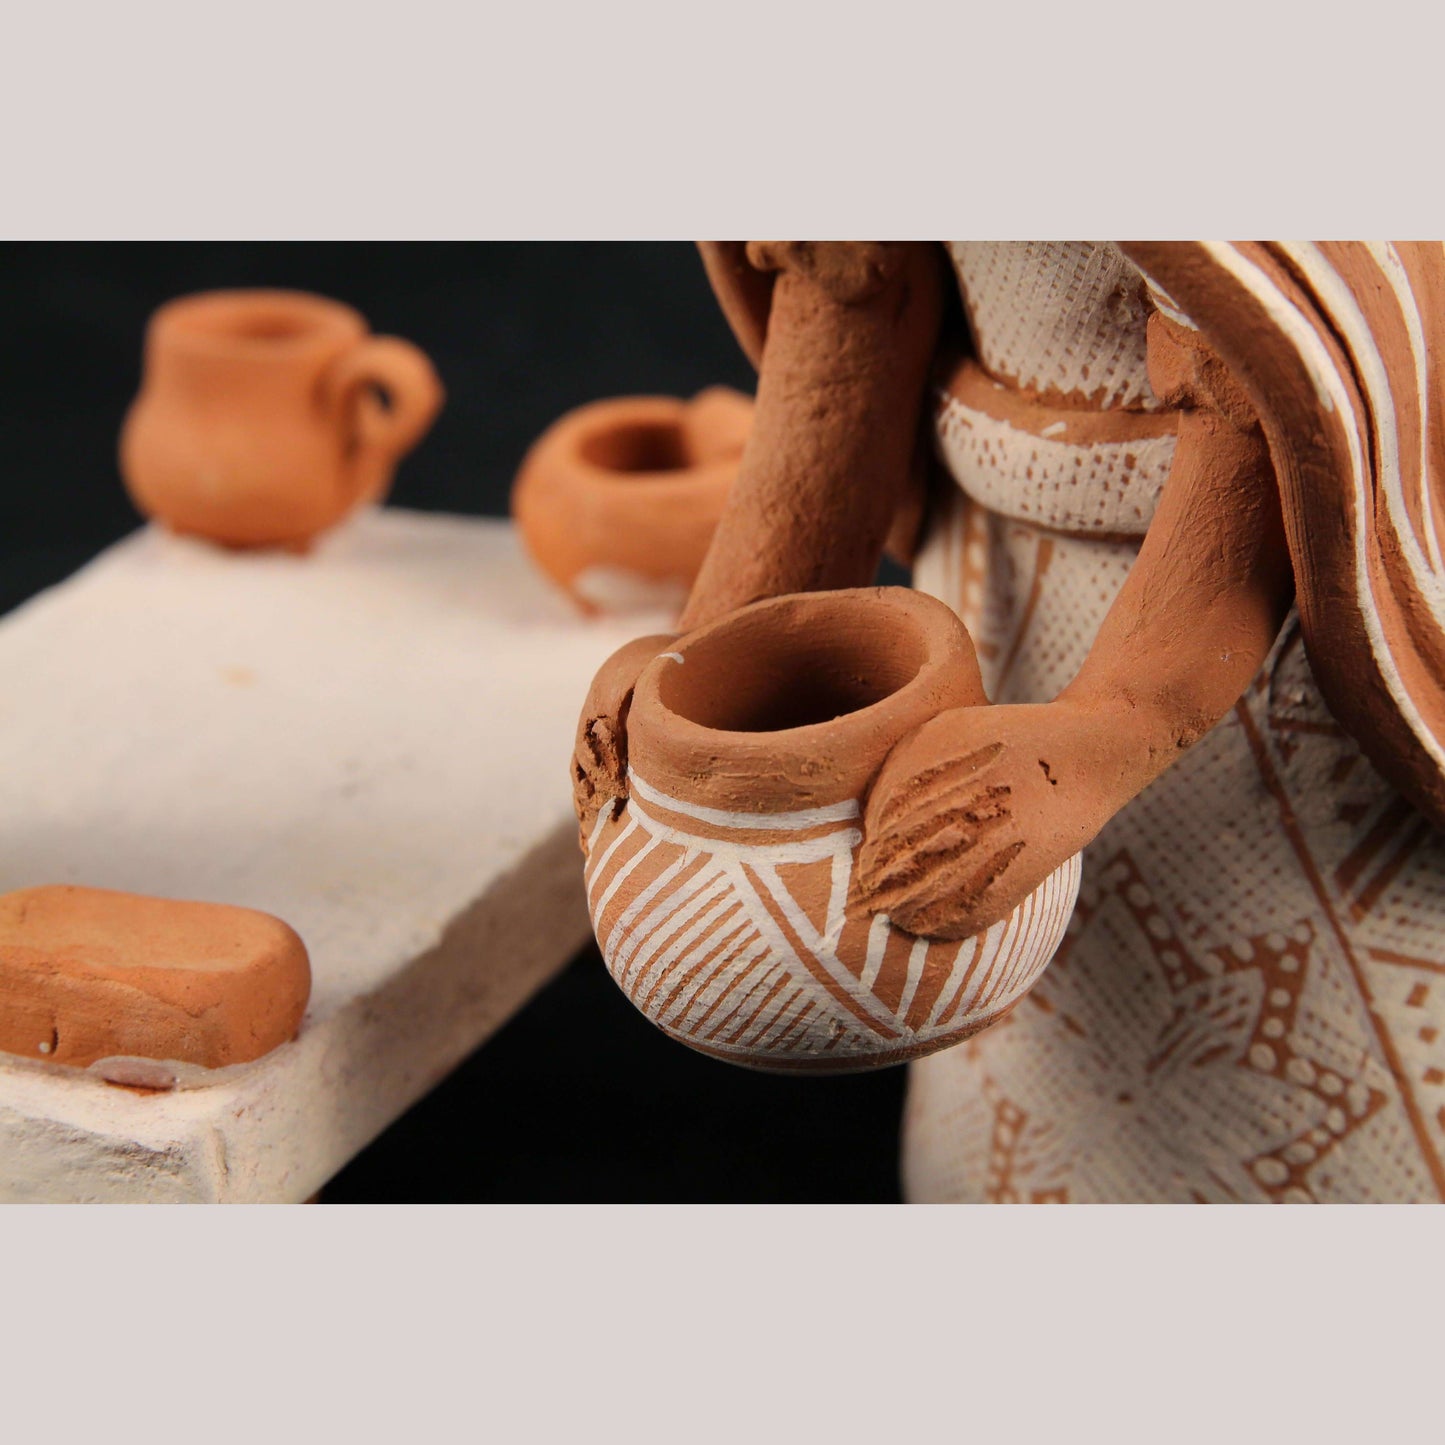 Mexican Ceramic Woman Figurine Handmade Folk Art Pottery Tata Tali